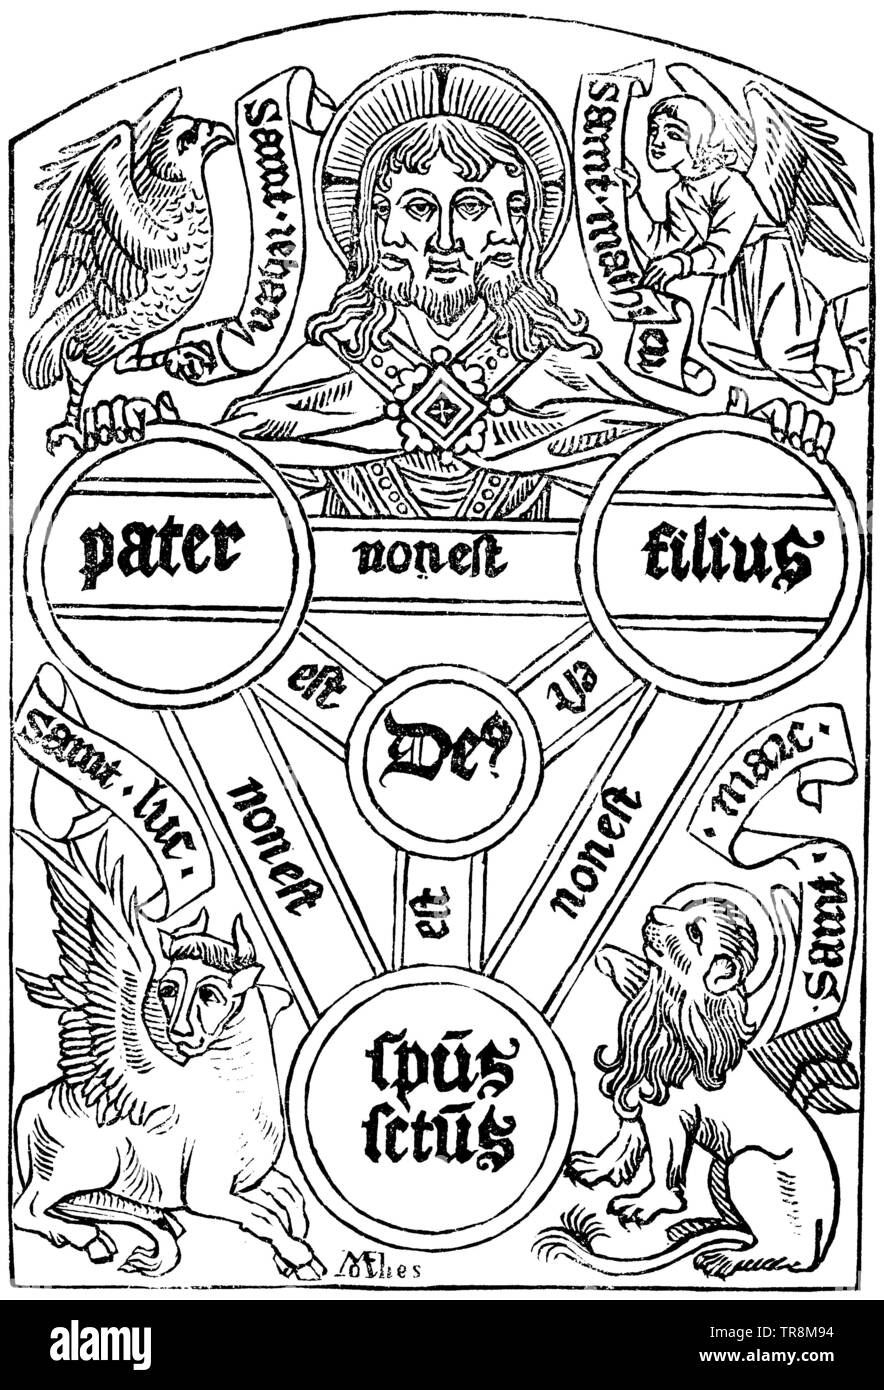 Symbolische Darstellung der Dreifaltigkeit im 16. Jahrhundert (Enzyklopädie, 1893) Stockfoto